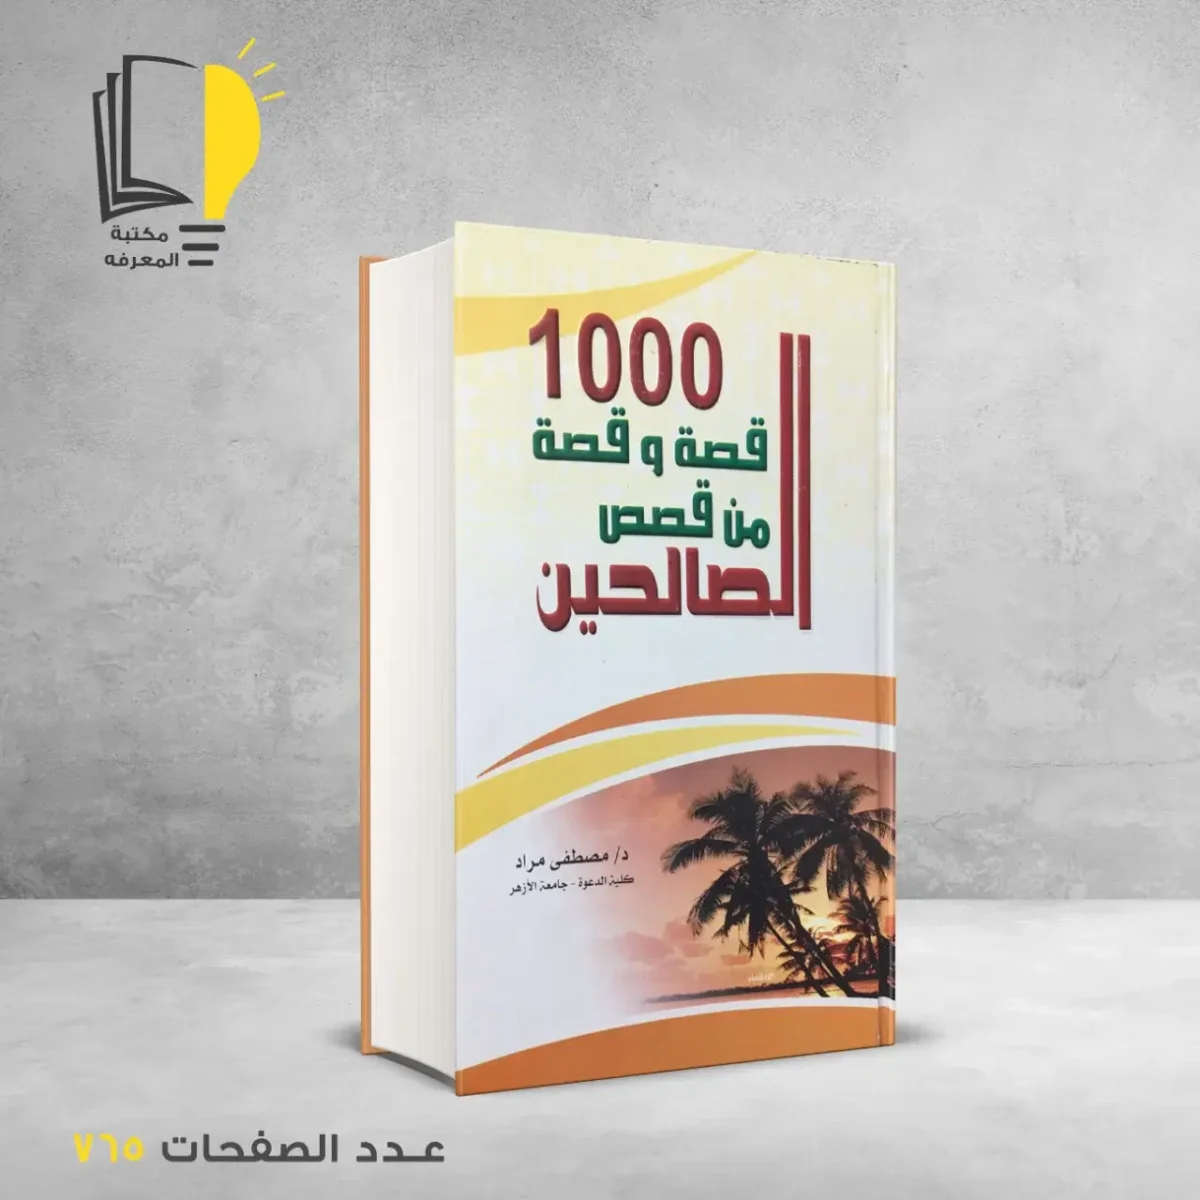 مكتبة المعرفة - كتاب 1000 قصة و قصة من قصص الصالحين